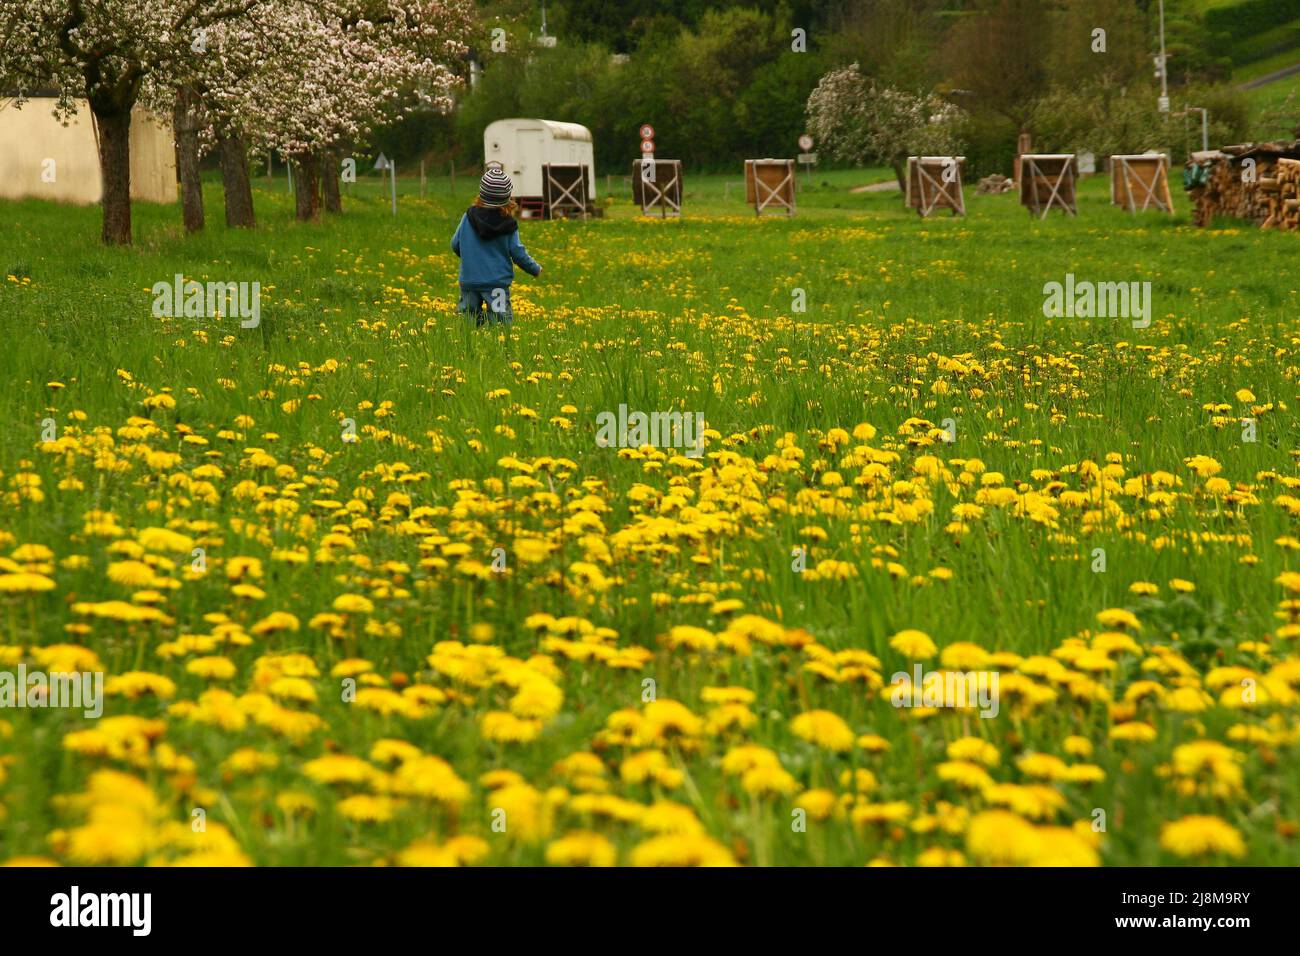 Deutschland, Bayern, Unterfranken, Leinach. 29 vom April 2012. Kleiner Junge, der durch die Elendswiese geht und Blumen pflückt. Honey Farm Stockfoto